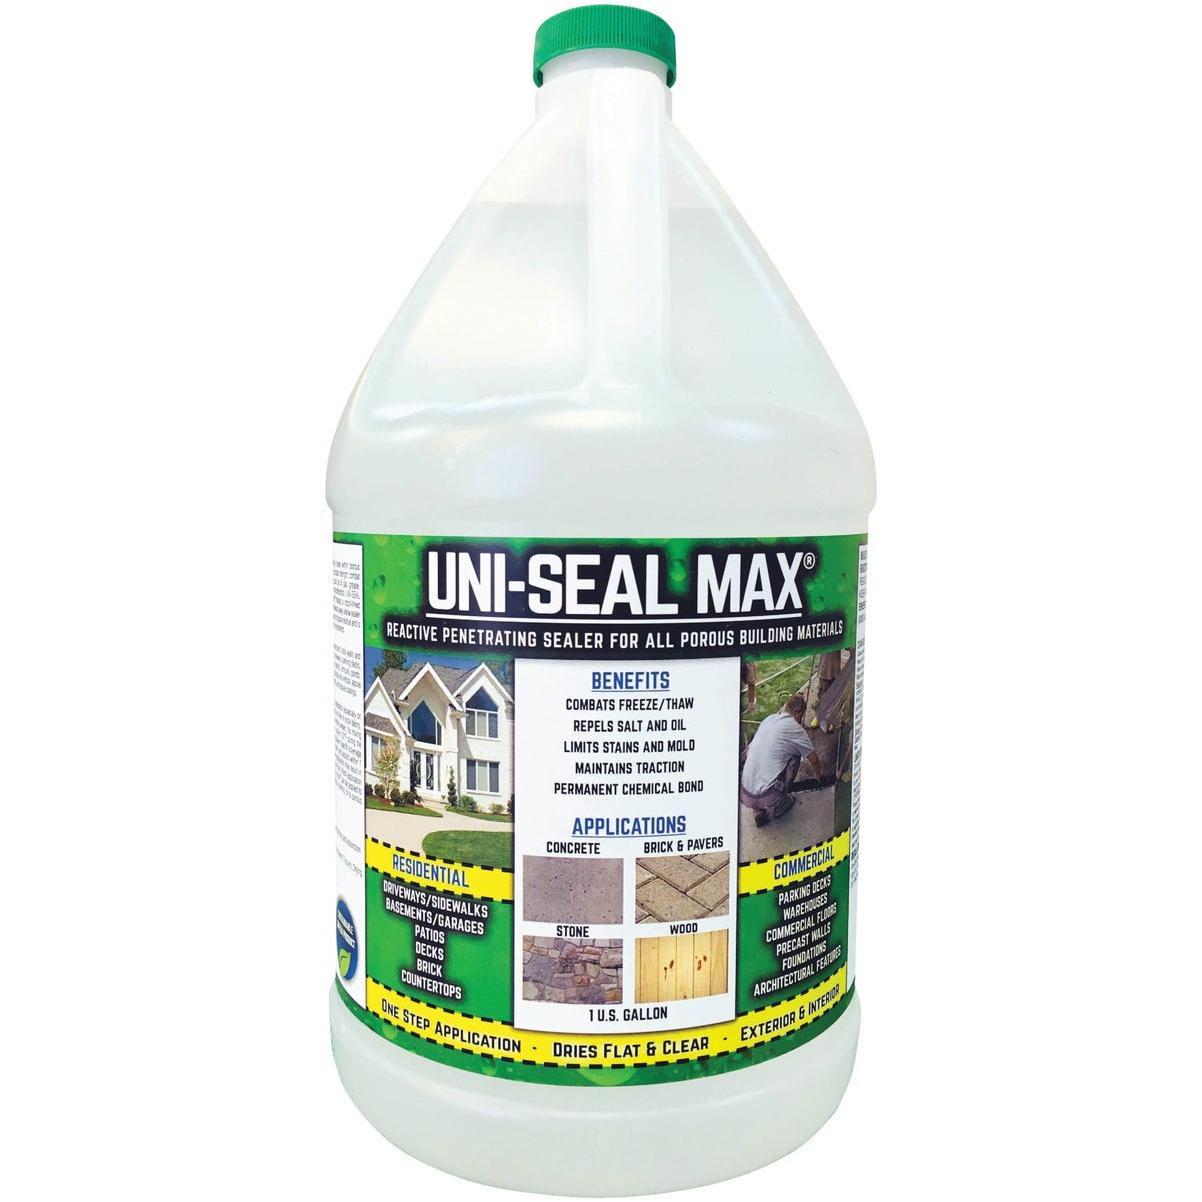 Flex Seal 14 oz. Spray Rubber Sealant, Green